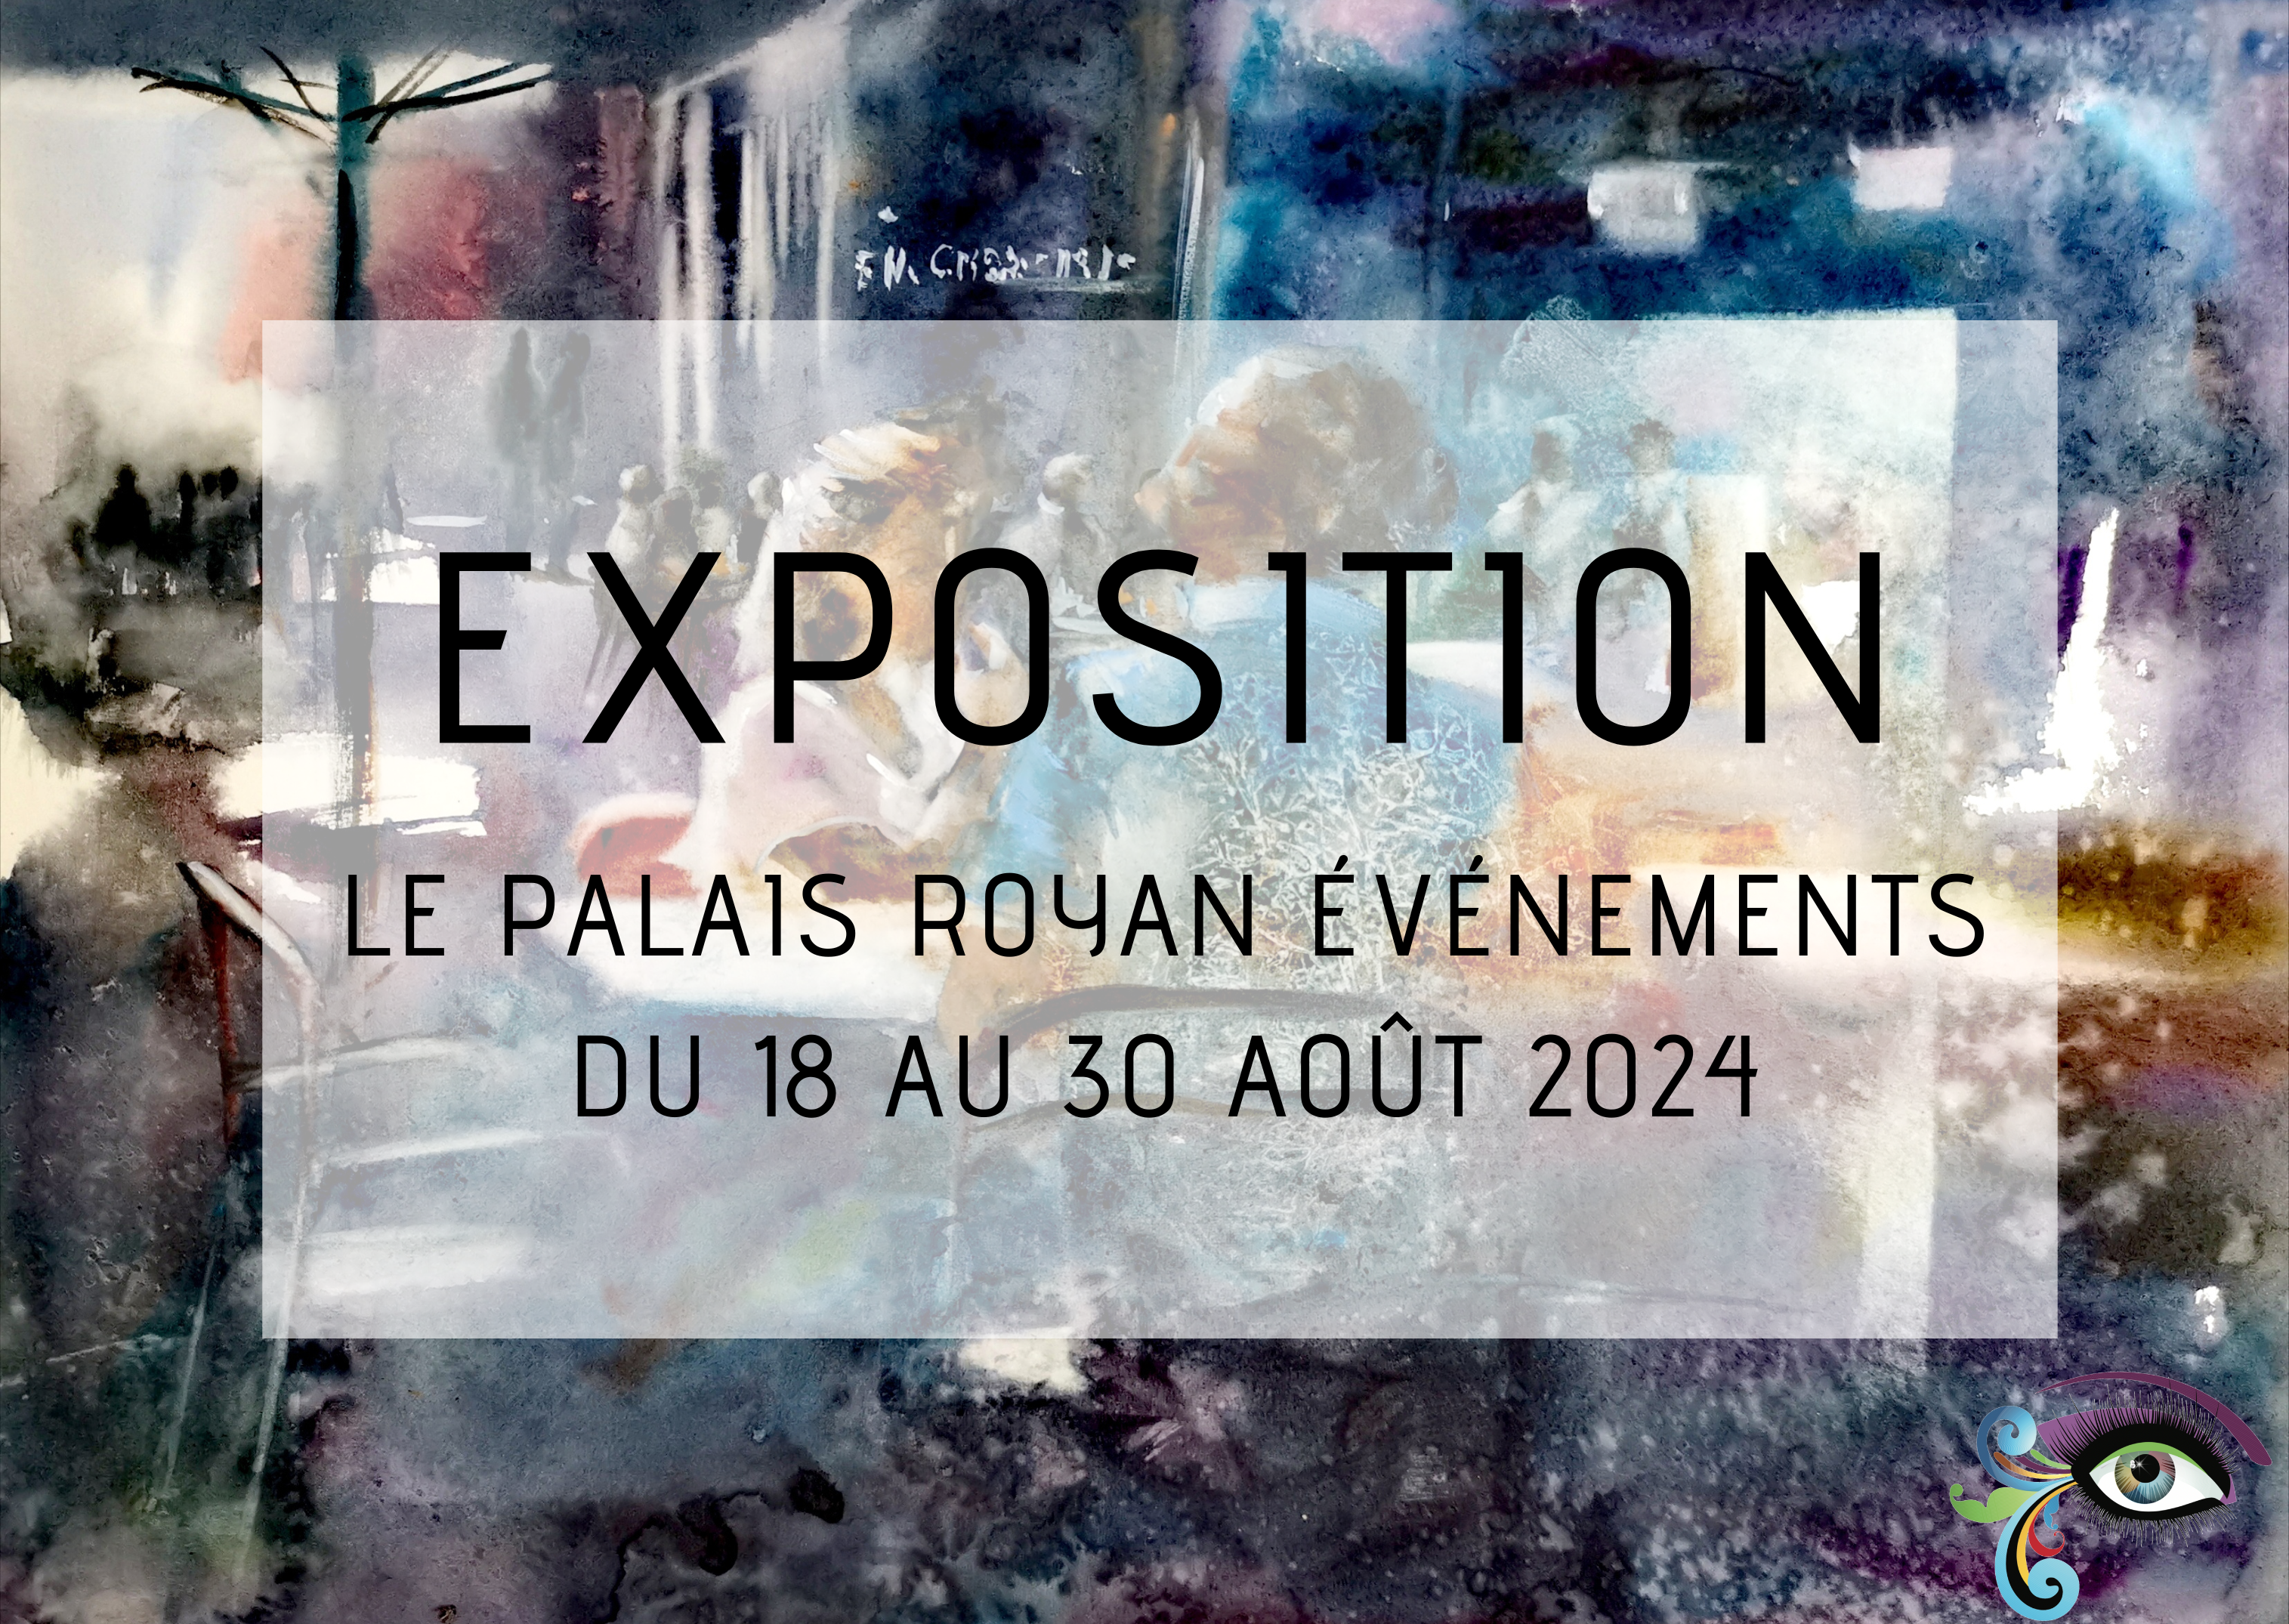 Exposition de pastels, aquarelles et sculpture au Palais Royan Événements en août 2024